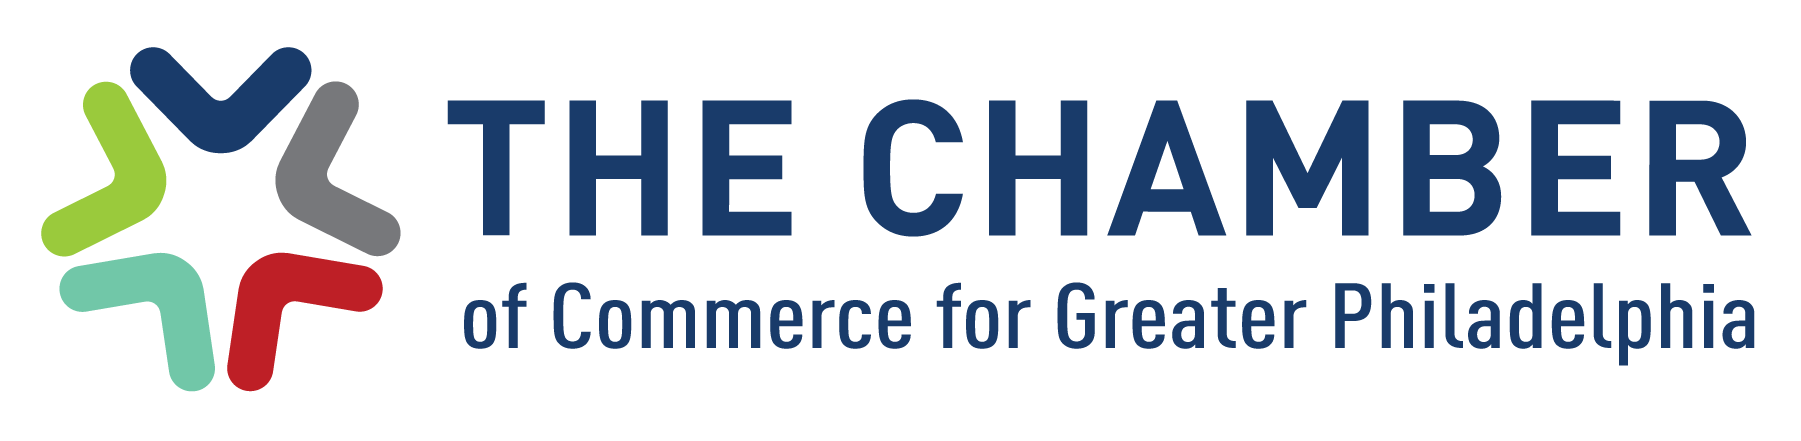 Chamber of Commerce for Greater Philadelphia